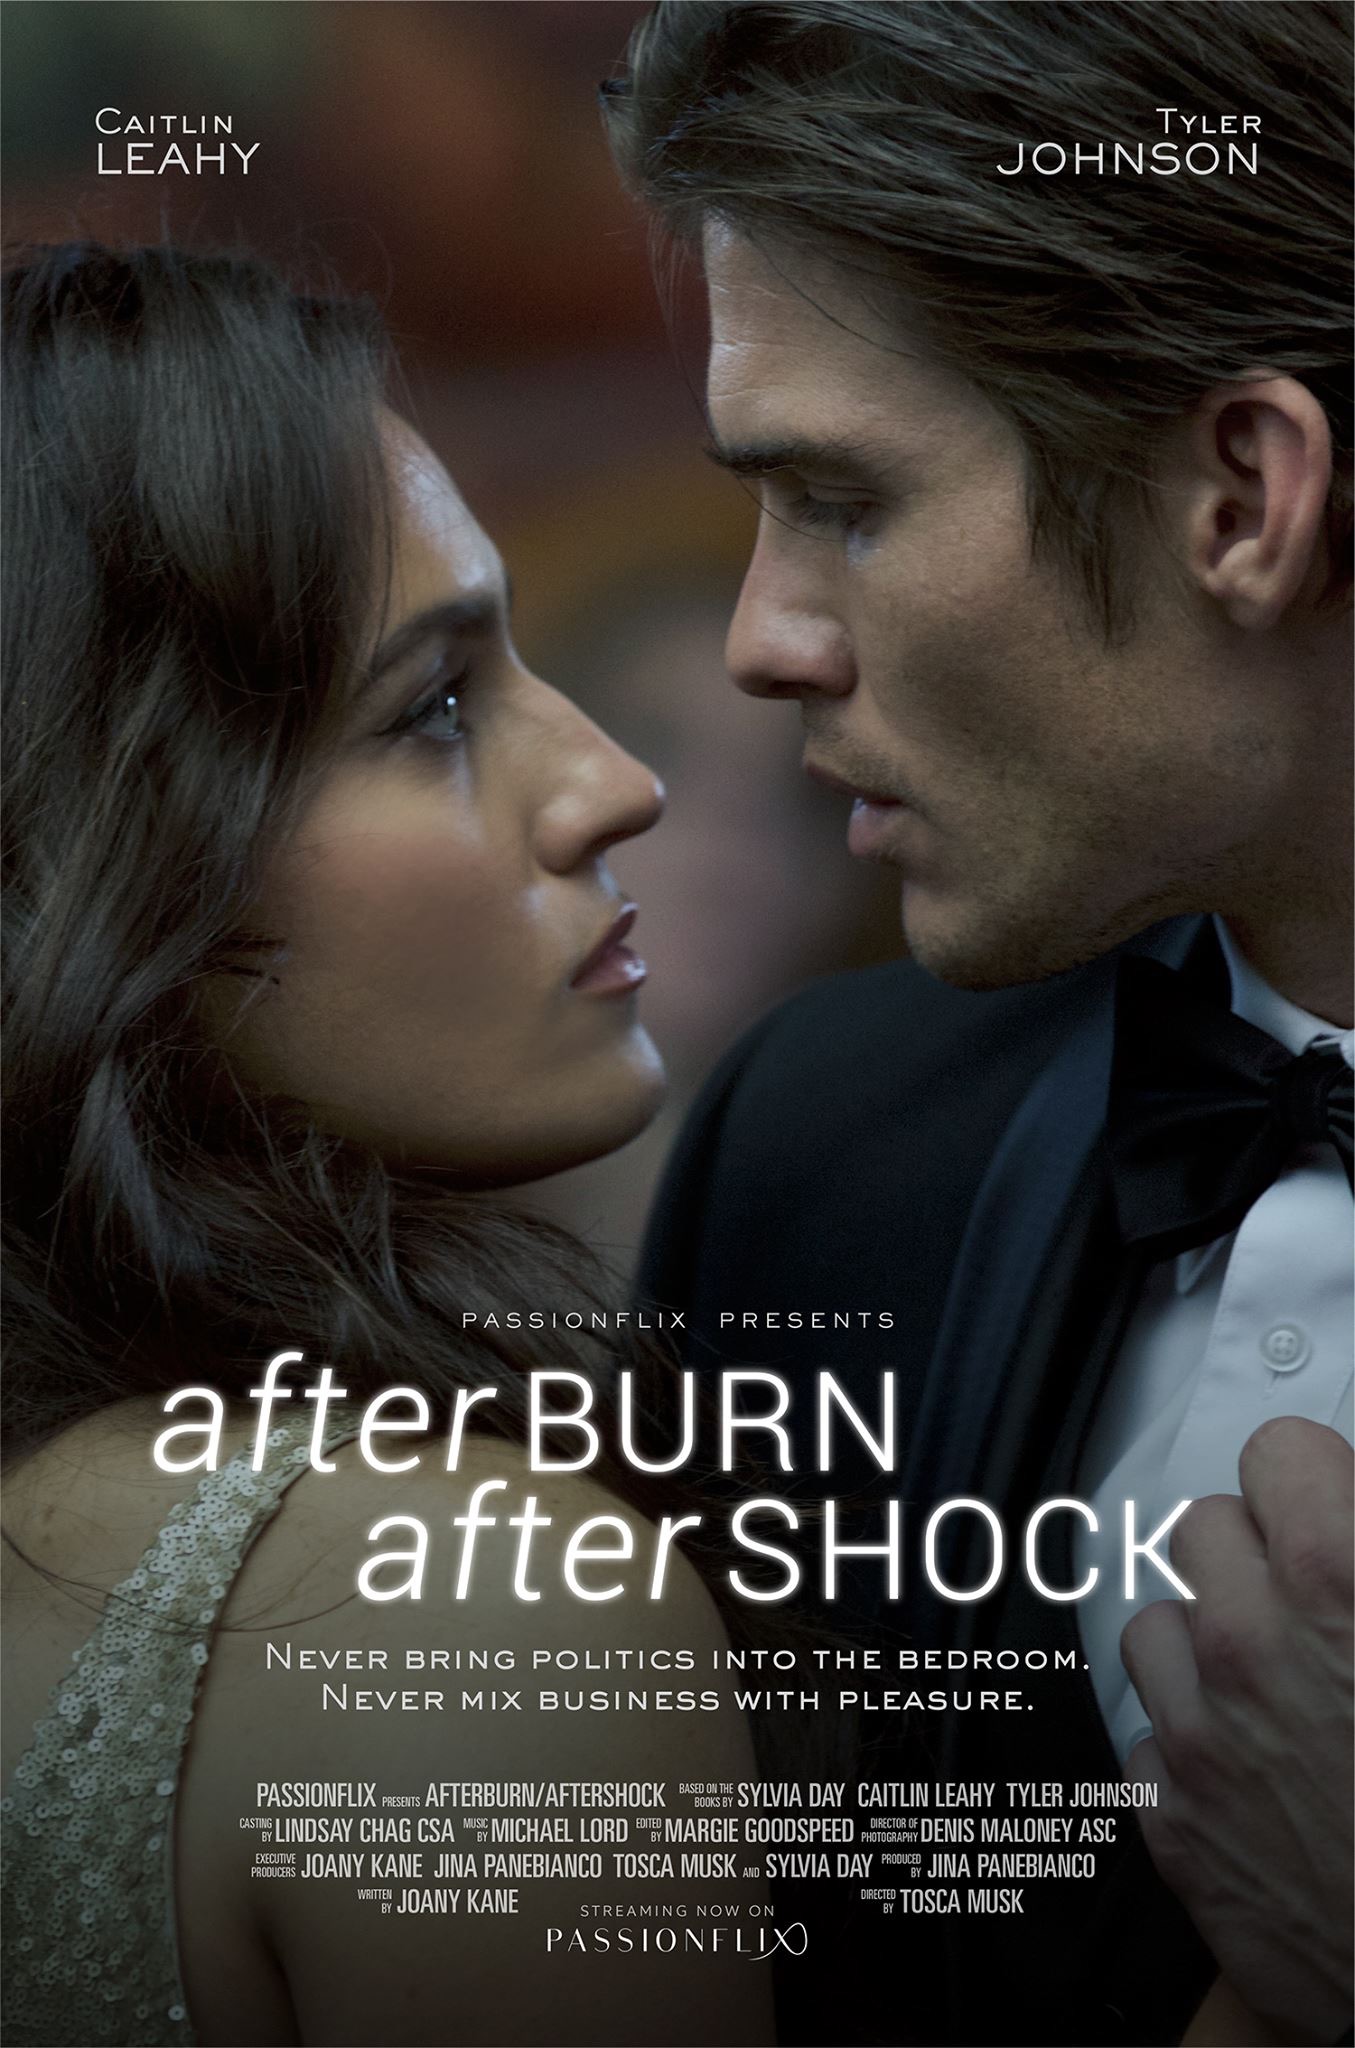 Nonton film Afterburn Aftershock layarkaca21 indoxx1 ganool online streaming terbaru